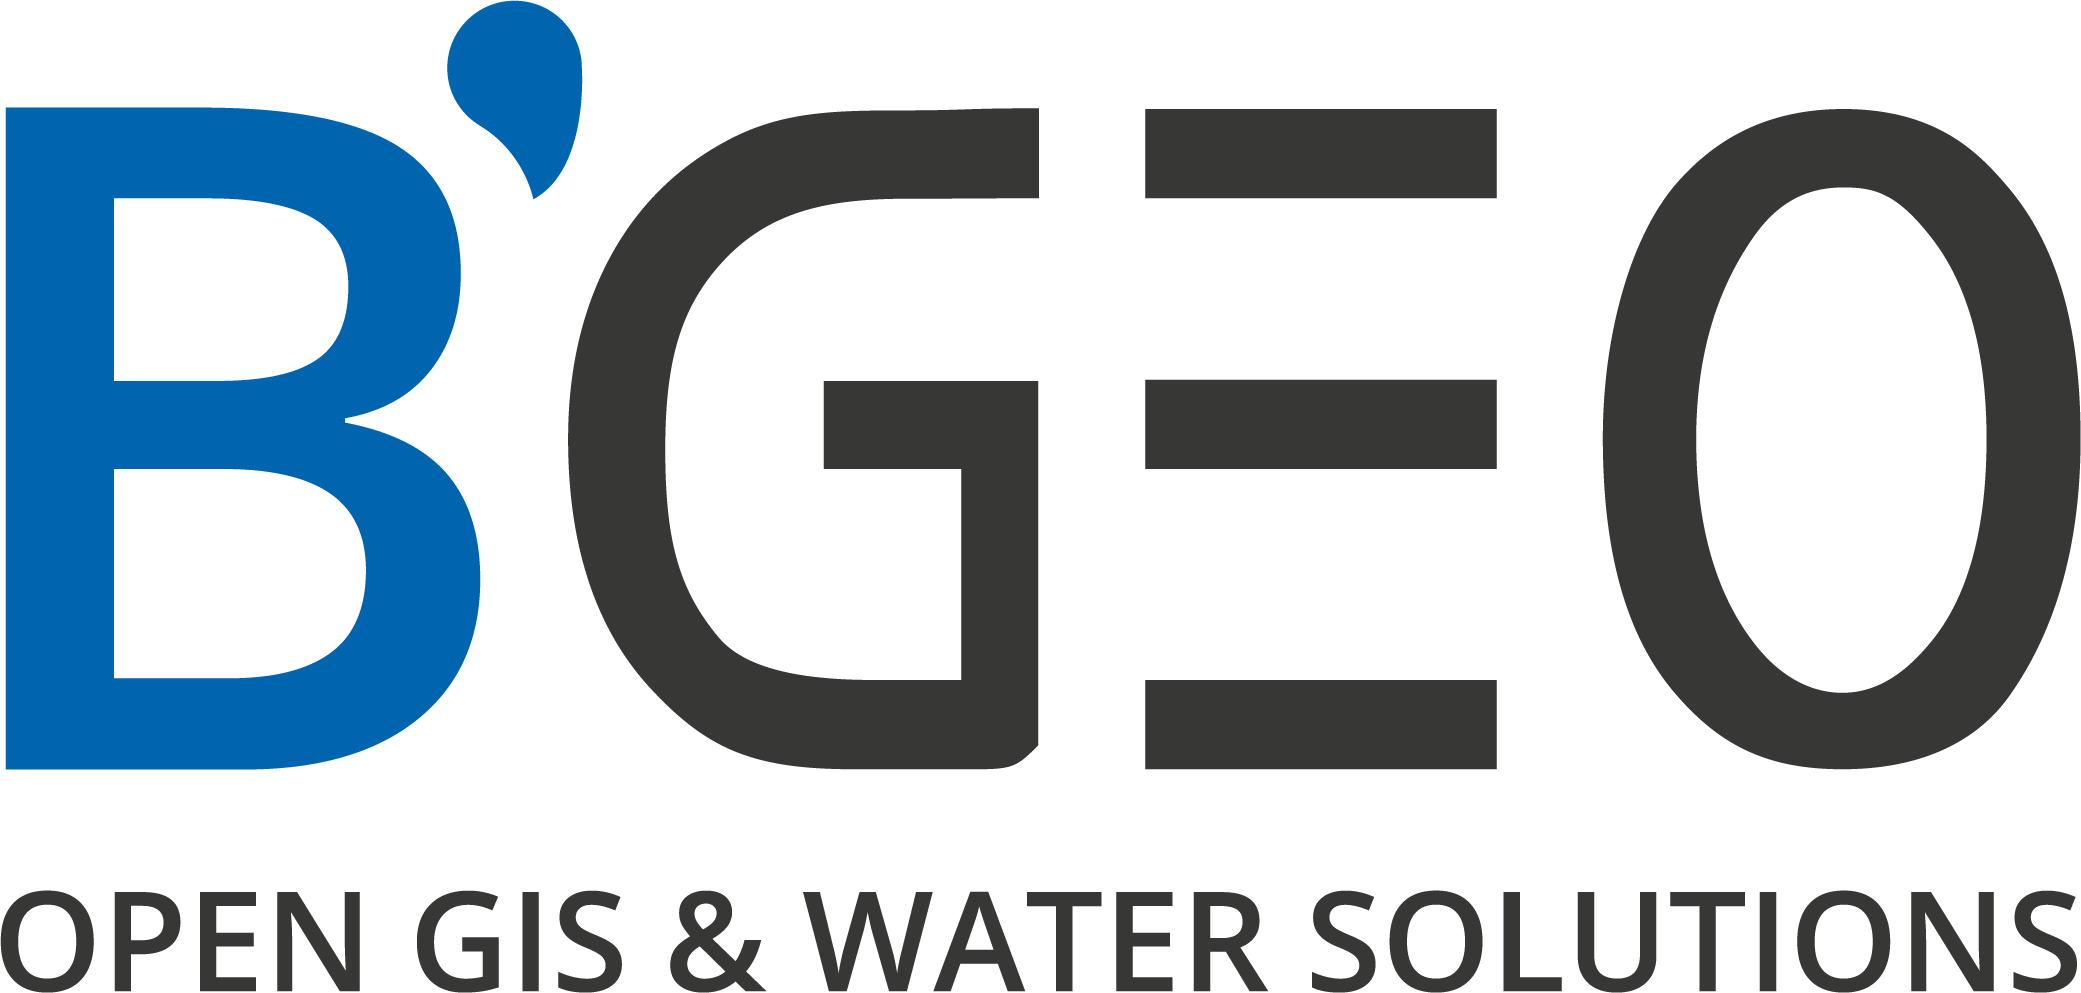 BGEO - OPEN GIS & WATER SOLUTIONS